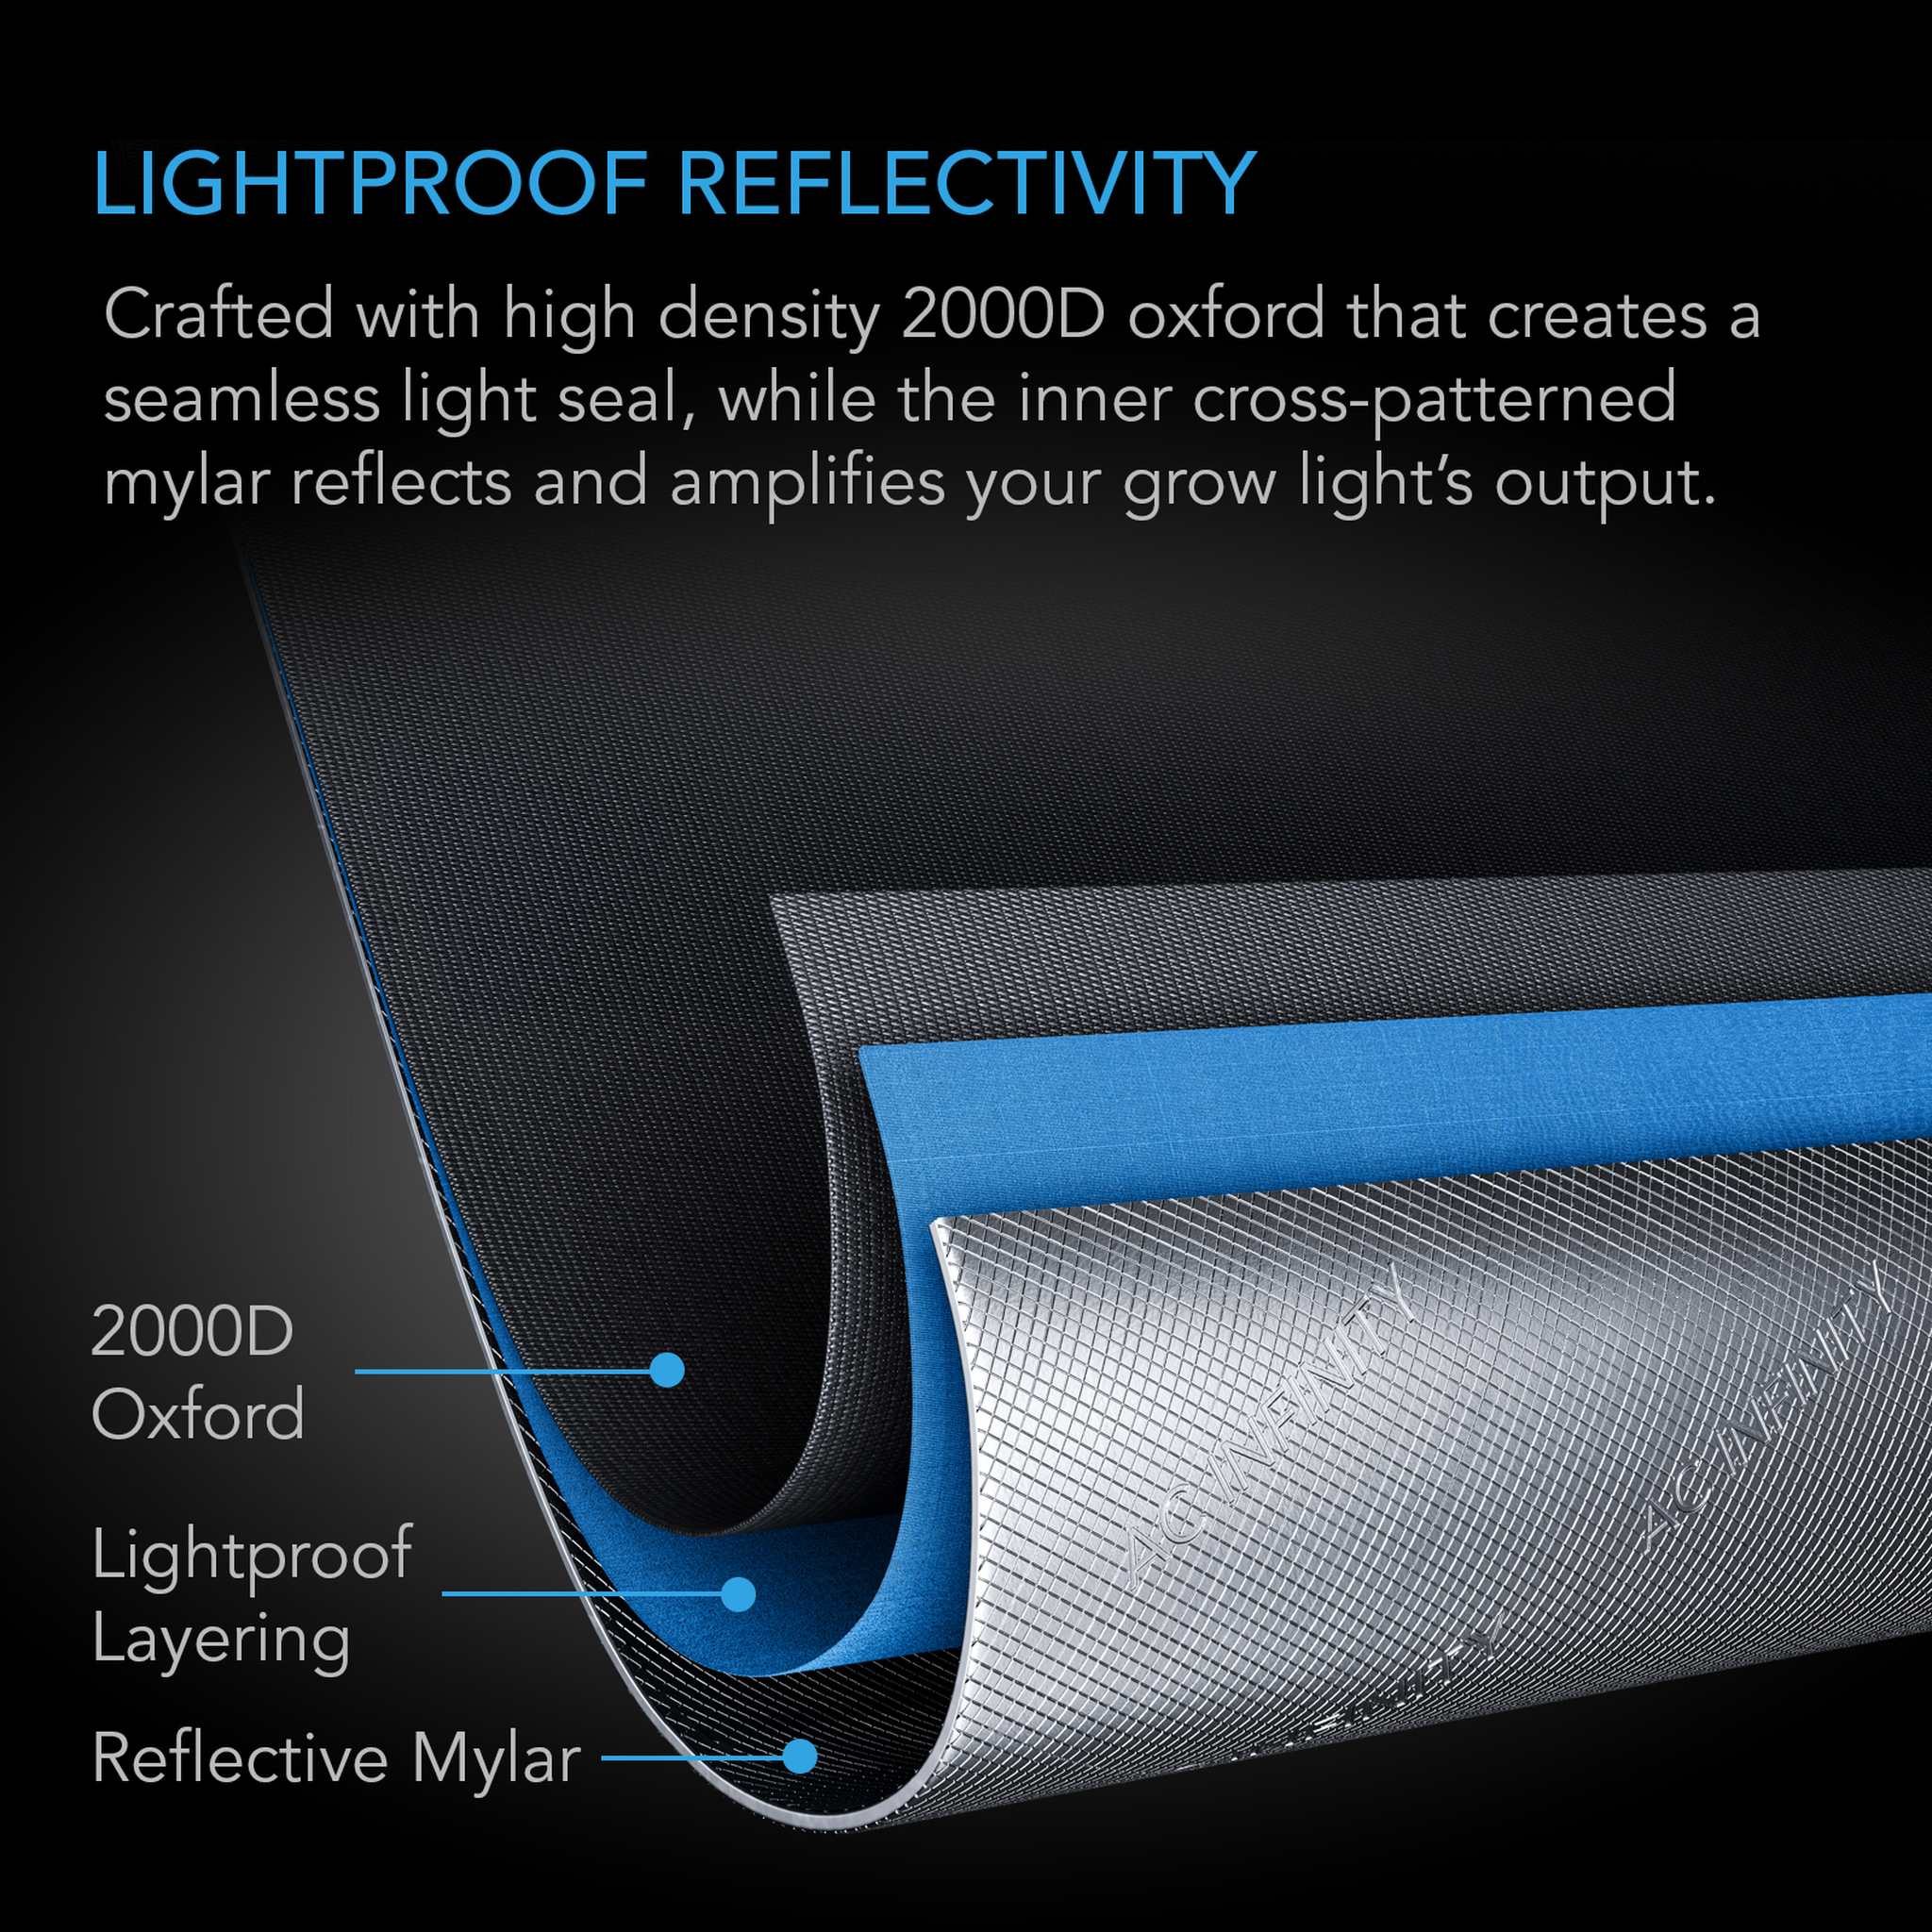 Lightproof Reflectivity